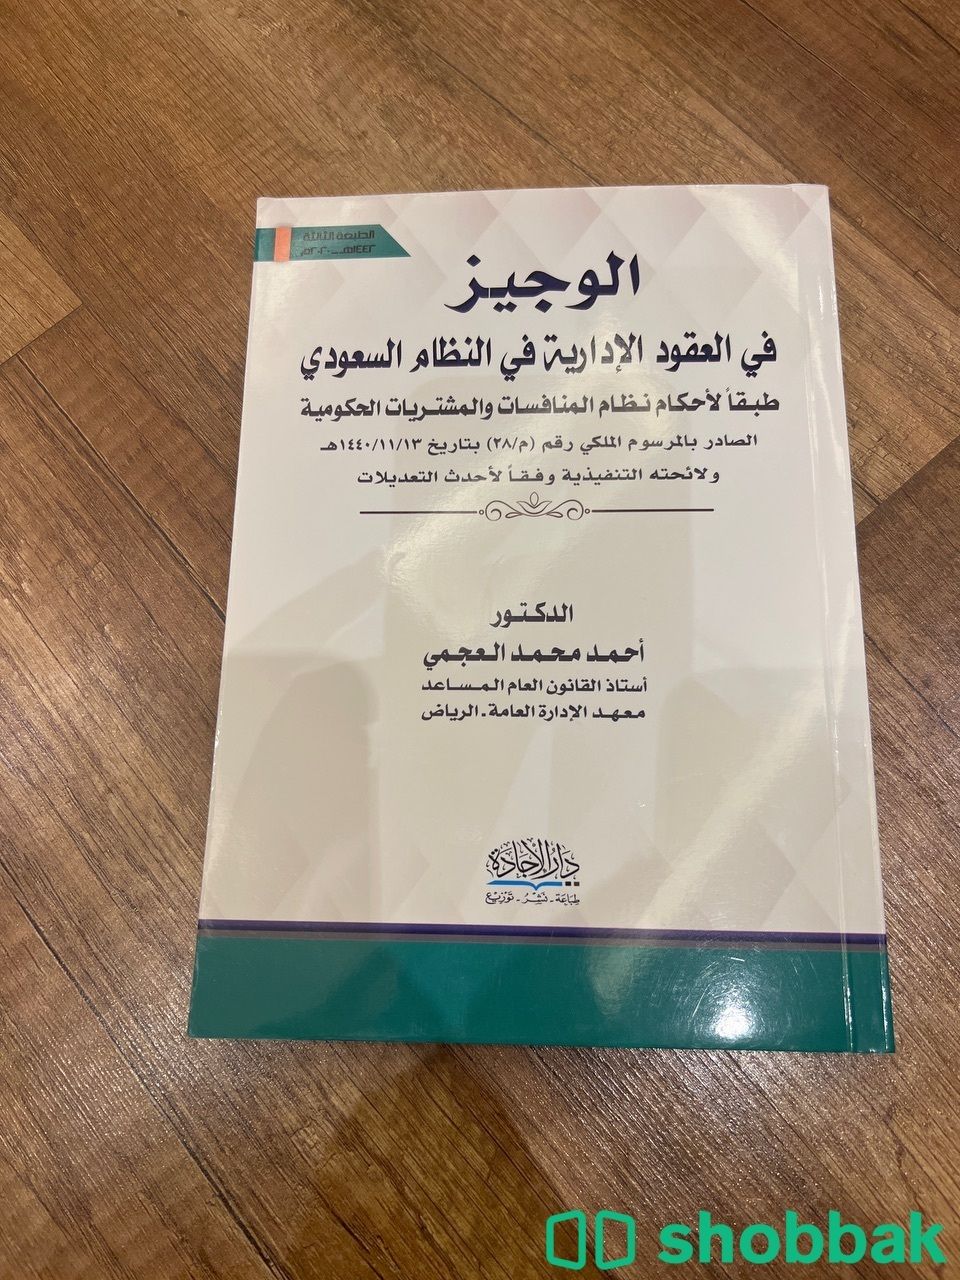  كتاب الوجيز في العقود الادارية في النظام السعودي  شباك السعودية